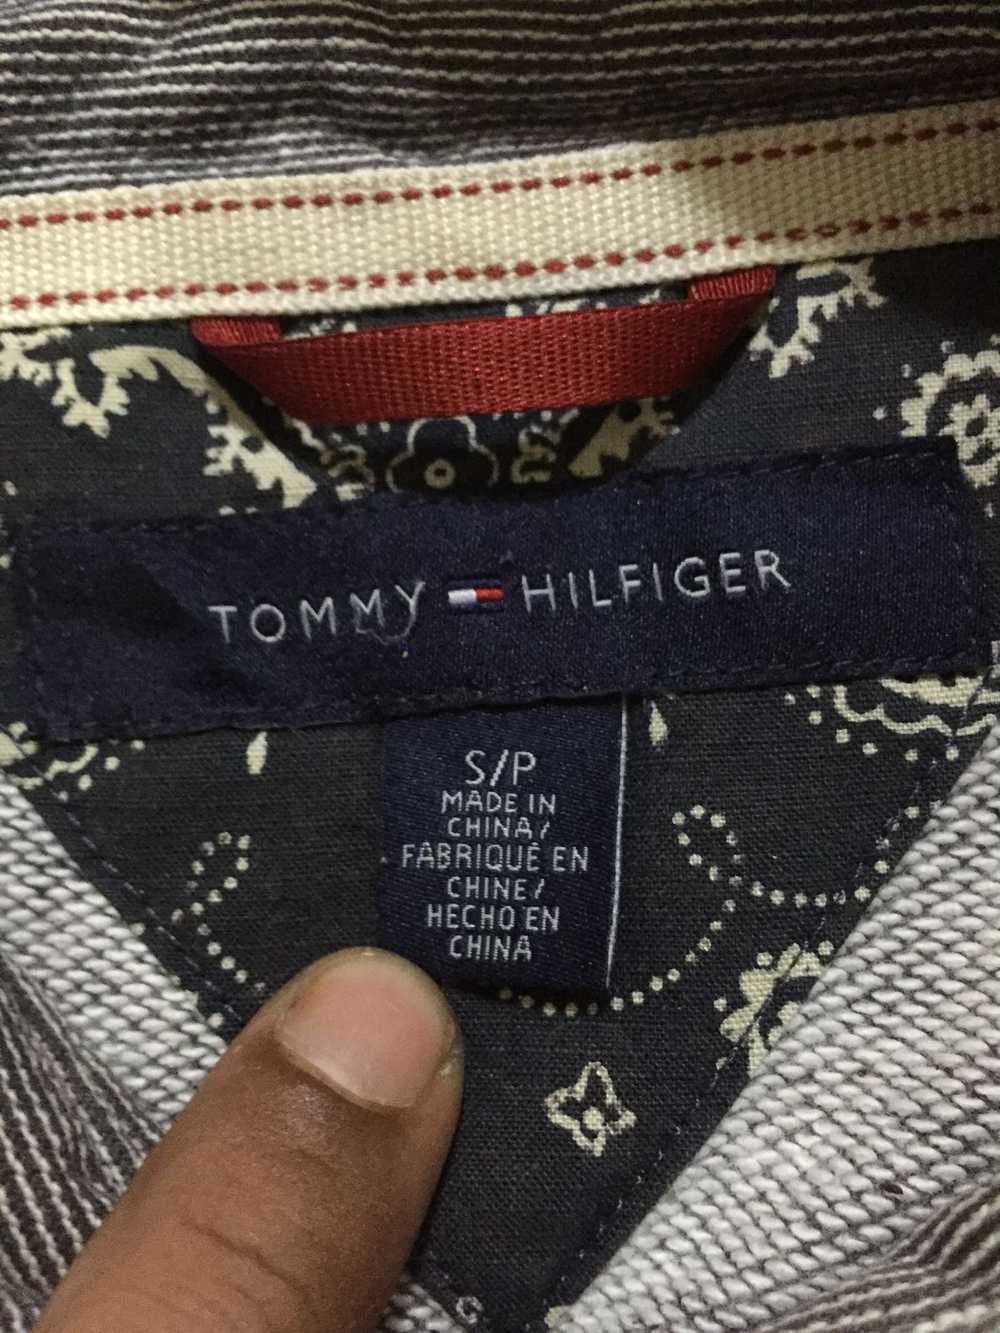 Tommy Hilfiger Rare!! Vintage Tommy Hilfinger Ame… - image 7